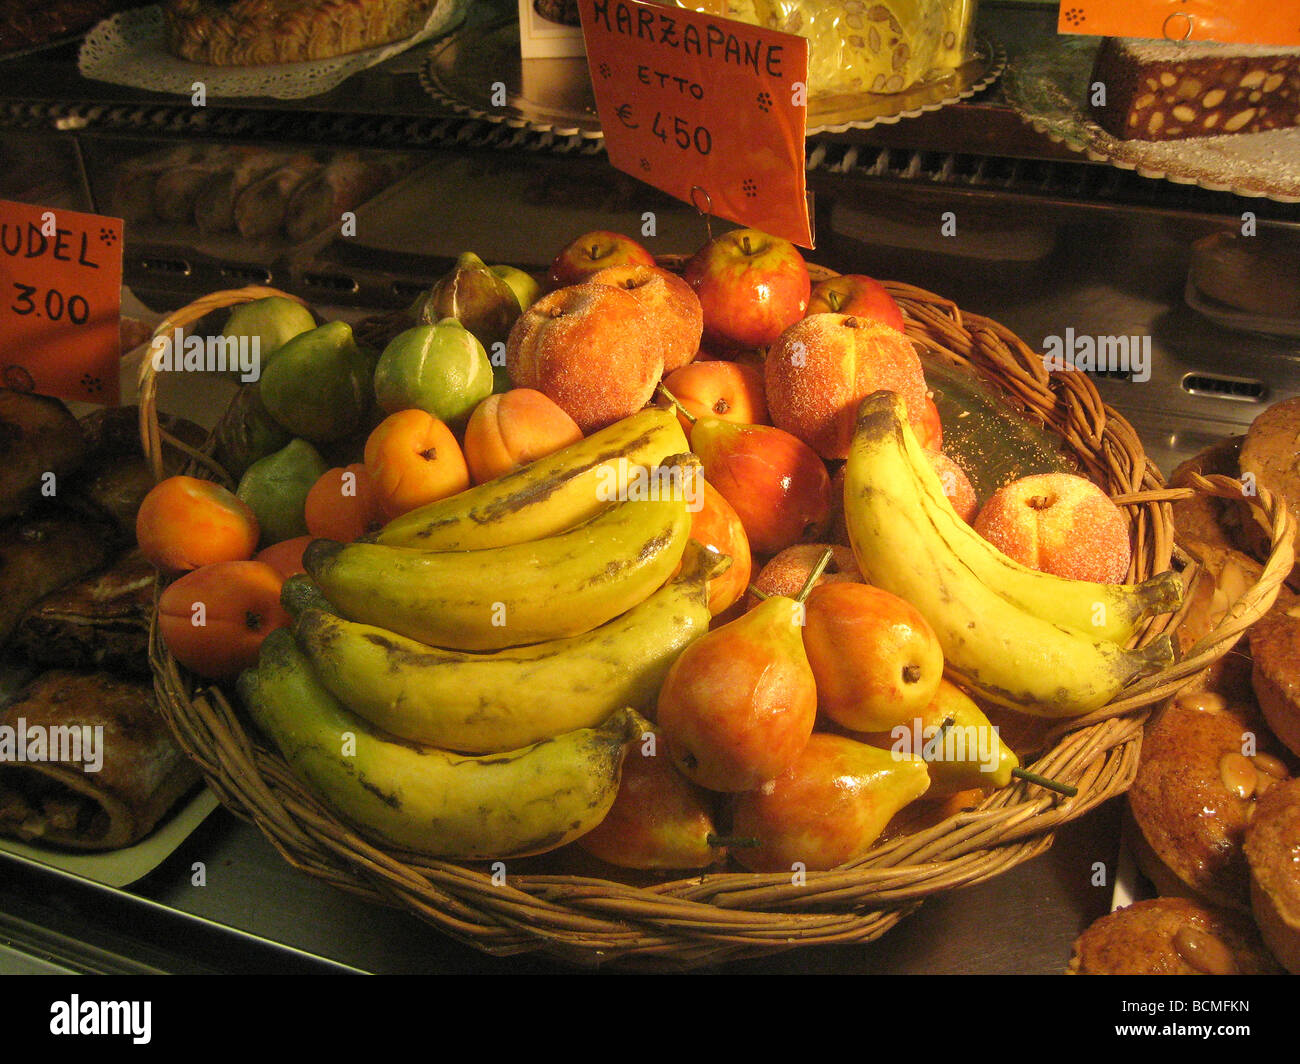 Frutta martorana immagini e fotografie stock ad alta risoluzione - Alamy